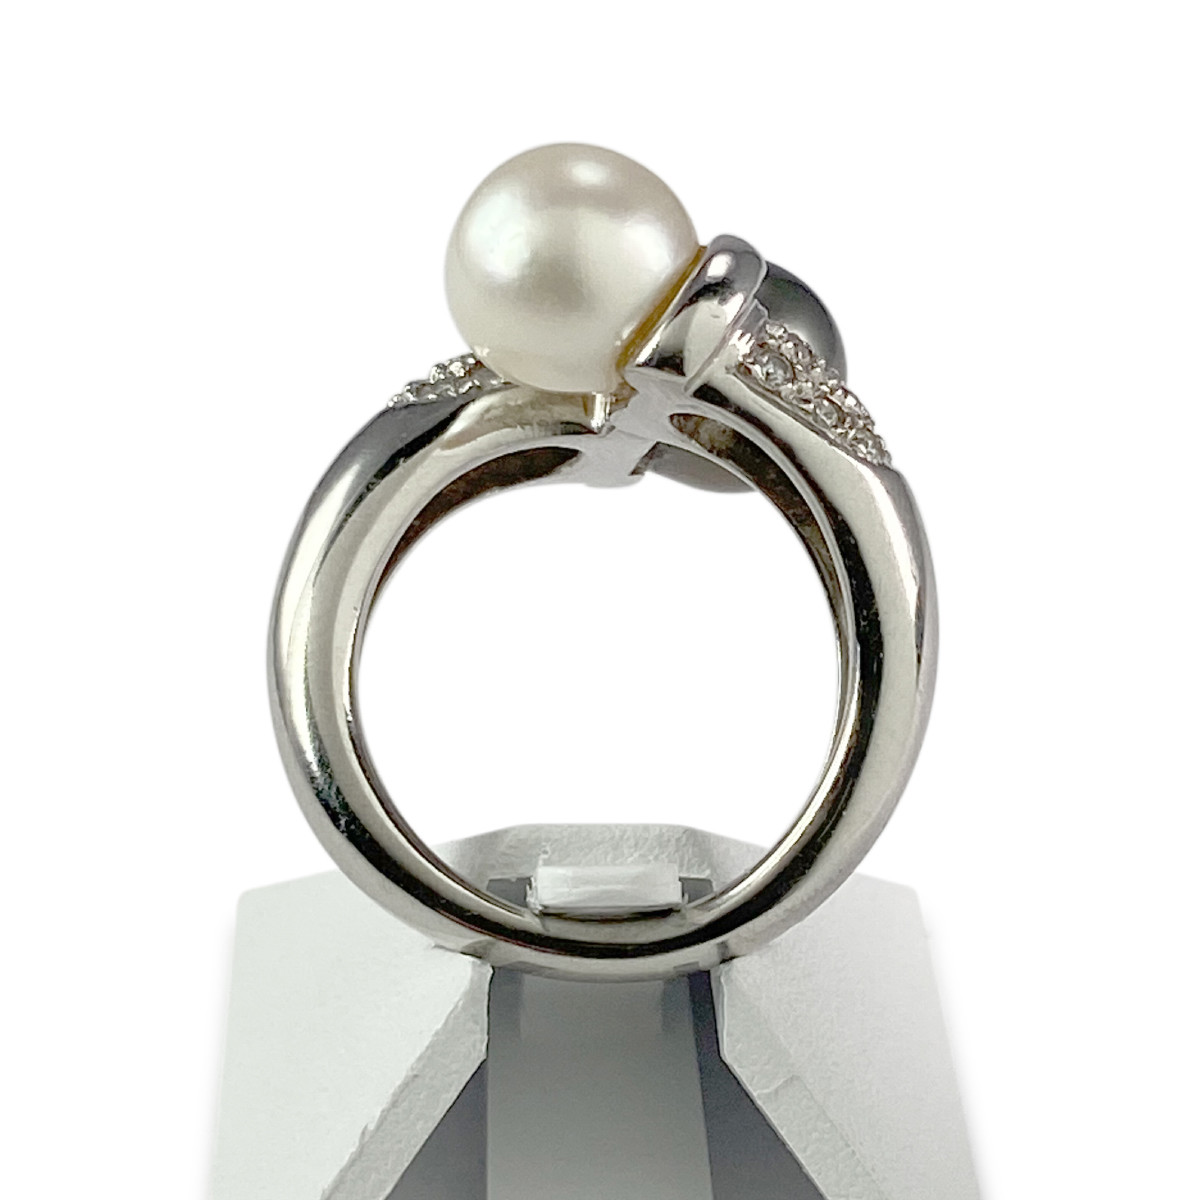 Bague d'occasion or 750 blanc perle de culture diamants - vue 3